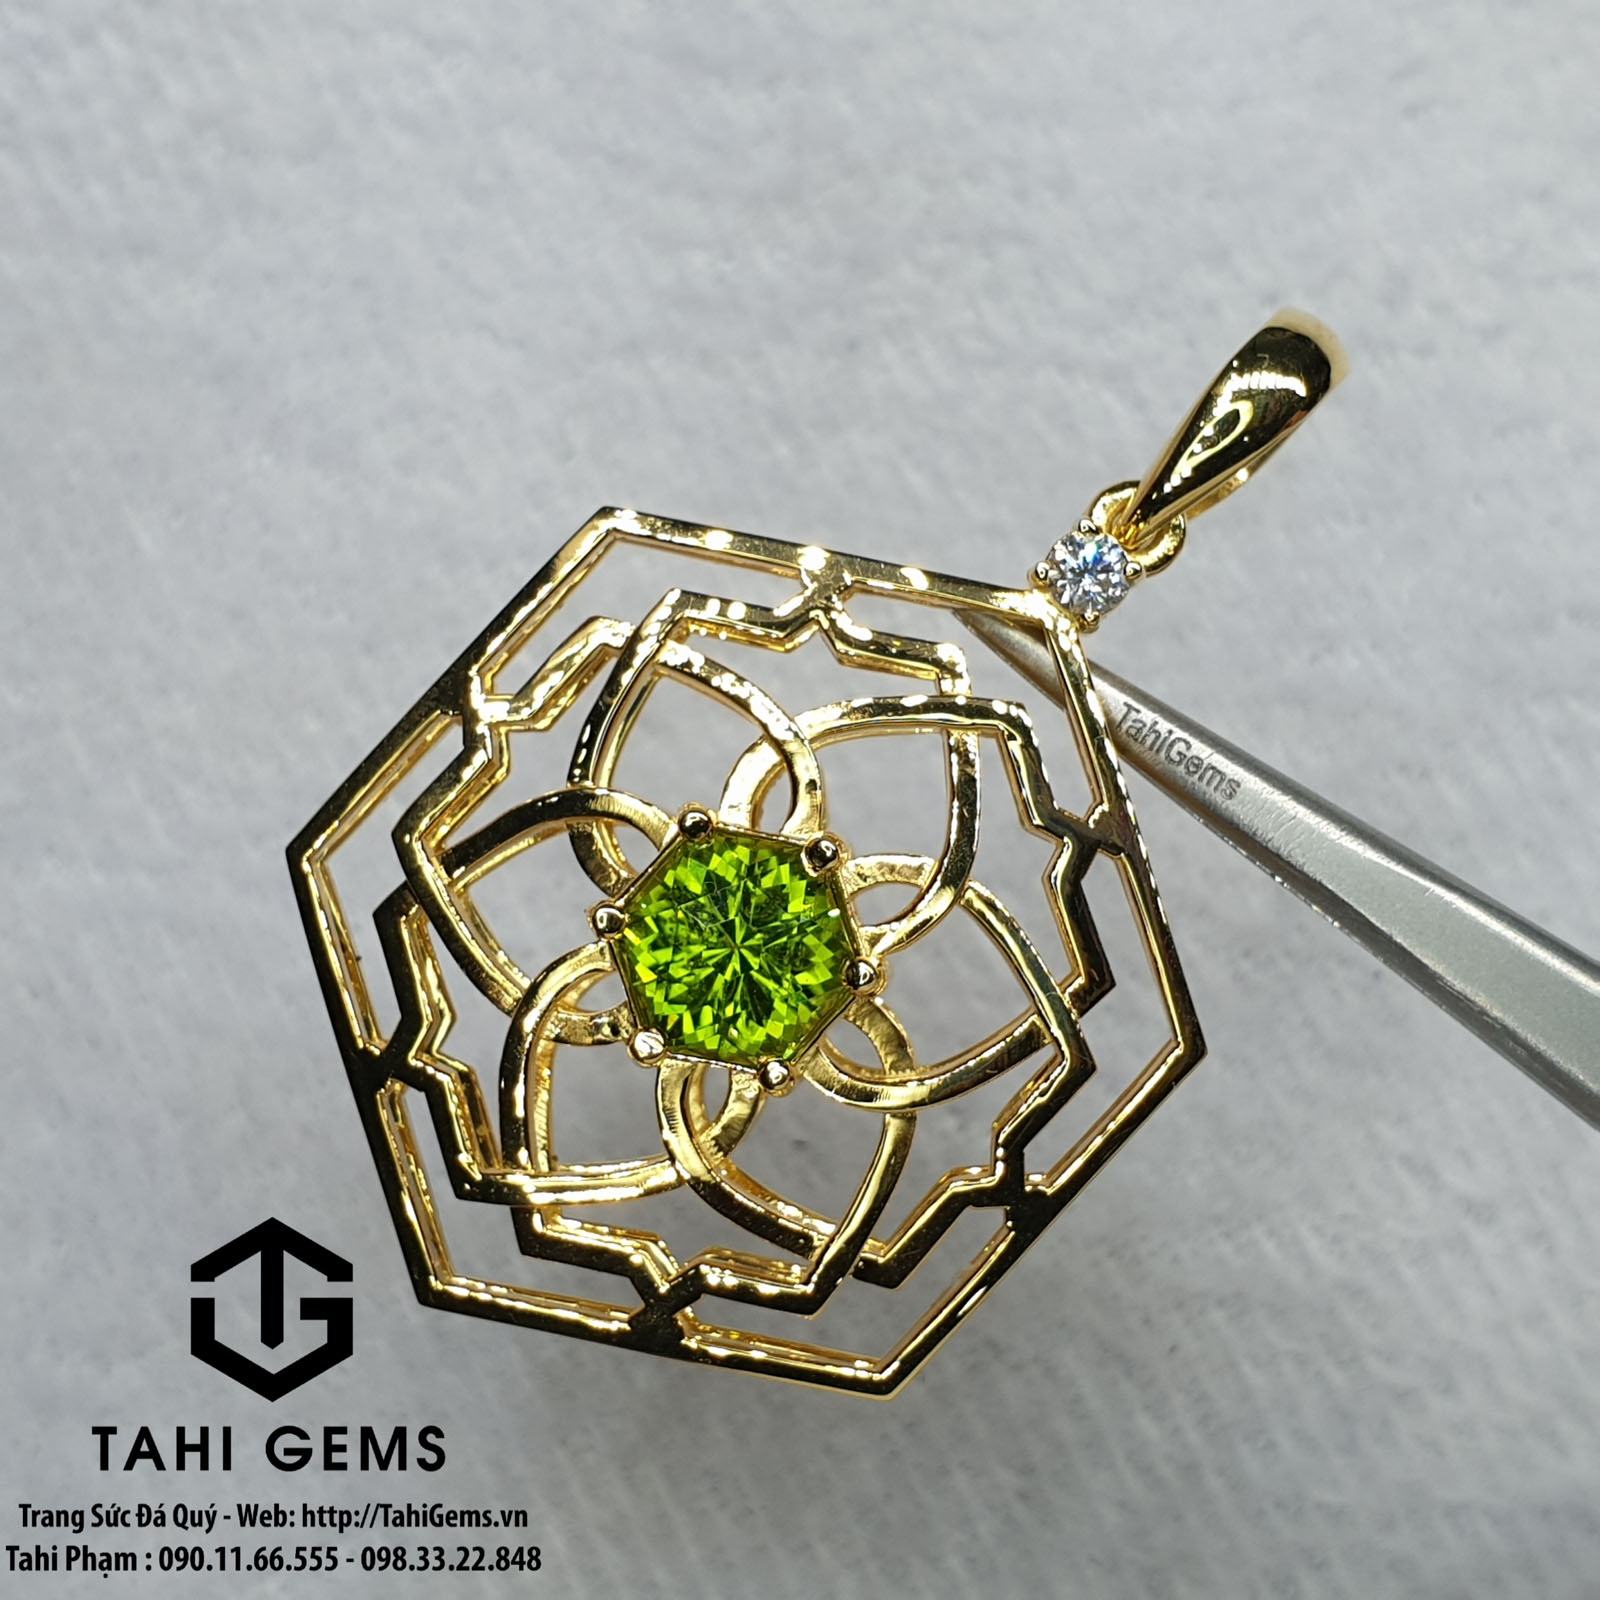 Tahi 3394 – Mặt dây chuyền hoa mai đá quý Peridot và tuocmalin kết hợp kim cương